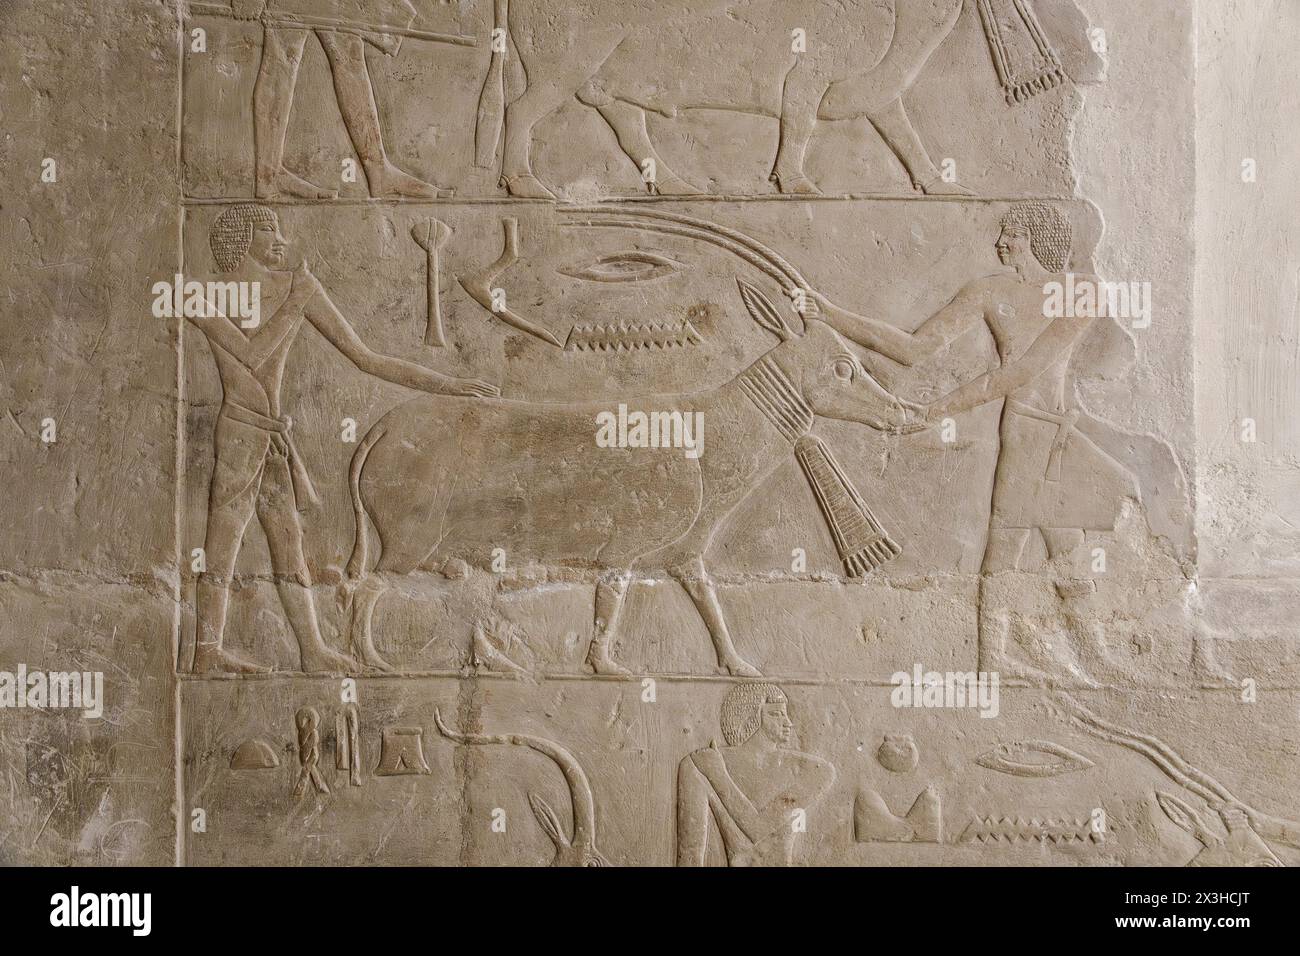 Mastaba Tombeau de Mereruka, Saqqara, Egypte Banque D'Images